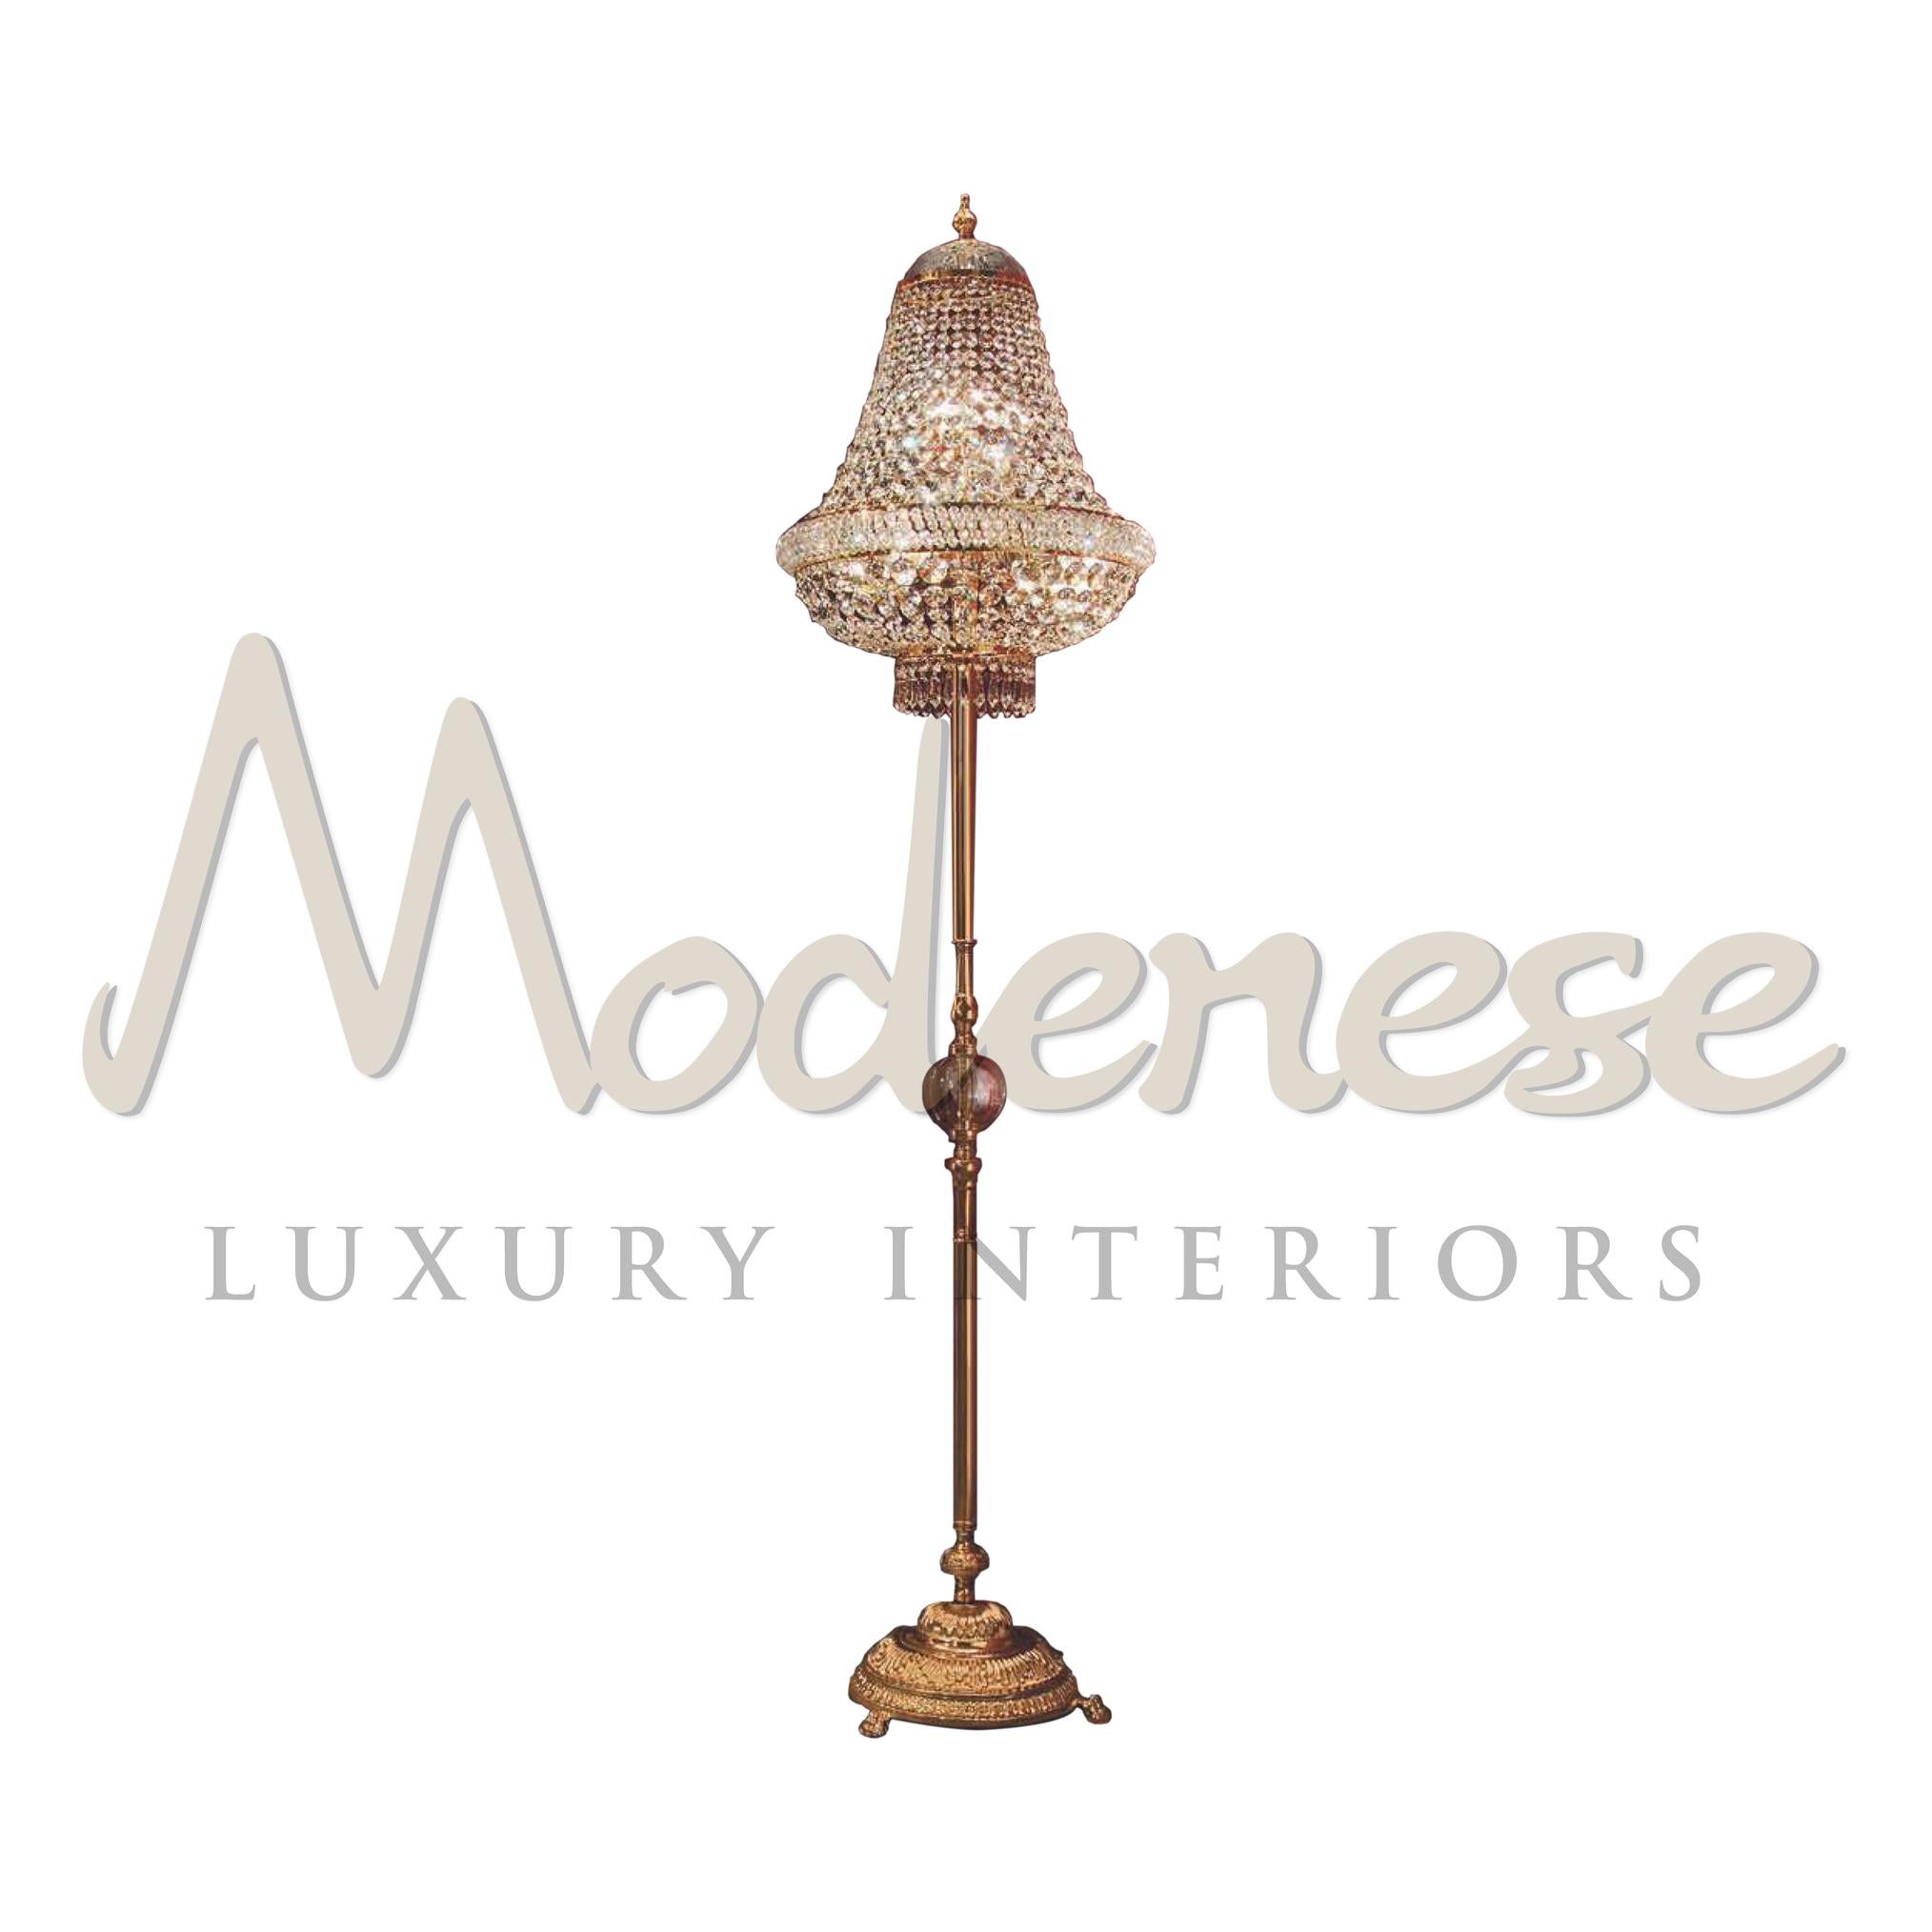 Der handgefertigte, 24-karätig vergoldete Ständer für die Staffelei-Lampe ist die perfekte Basis für die große 9-flammige Stehlampe, die mit Scholer-Kristall von Modenese Gastone luxury interiors ausgestattet ist. Dieses Modell benötigt 9 einzelne